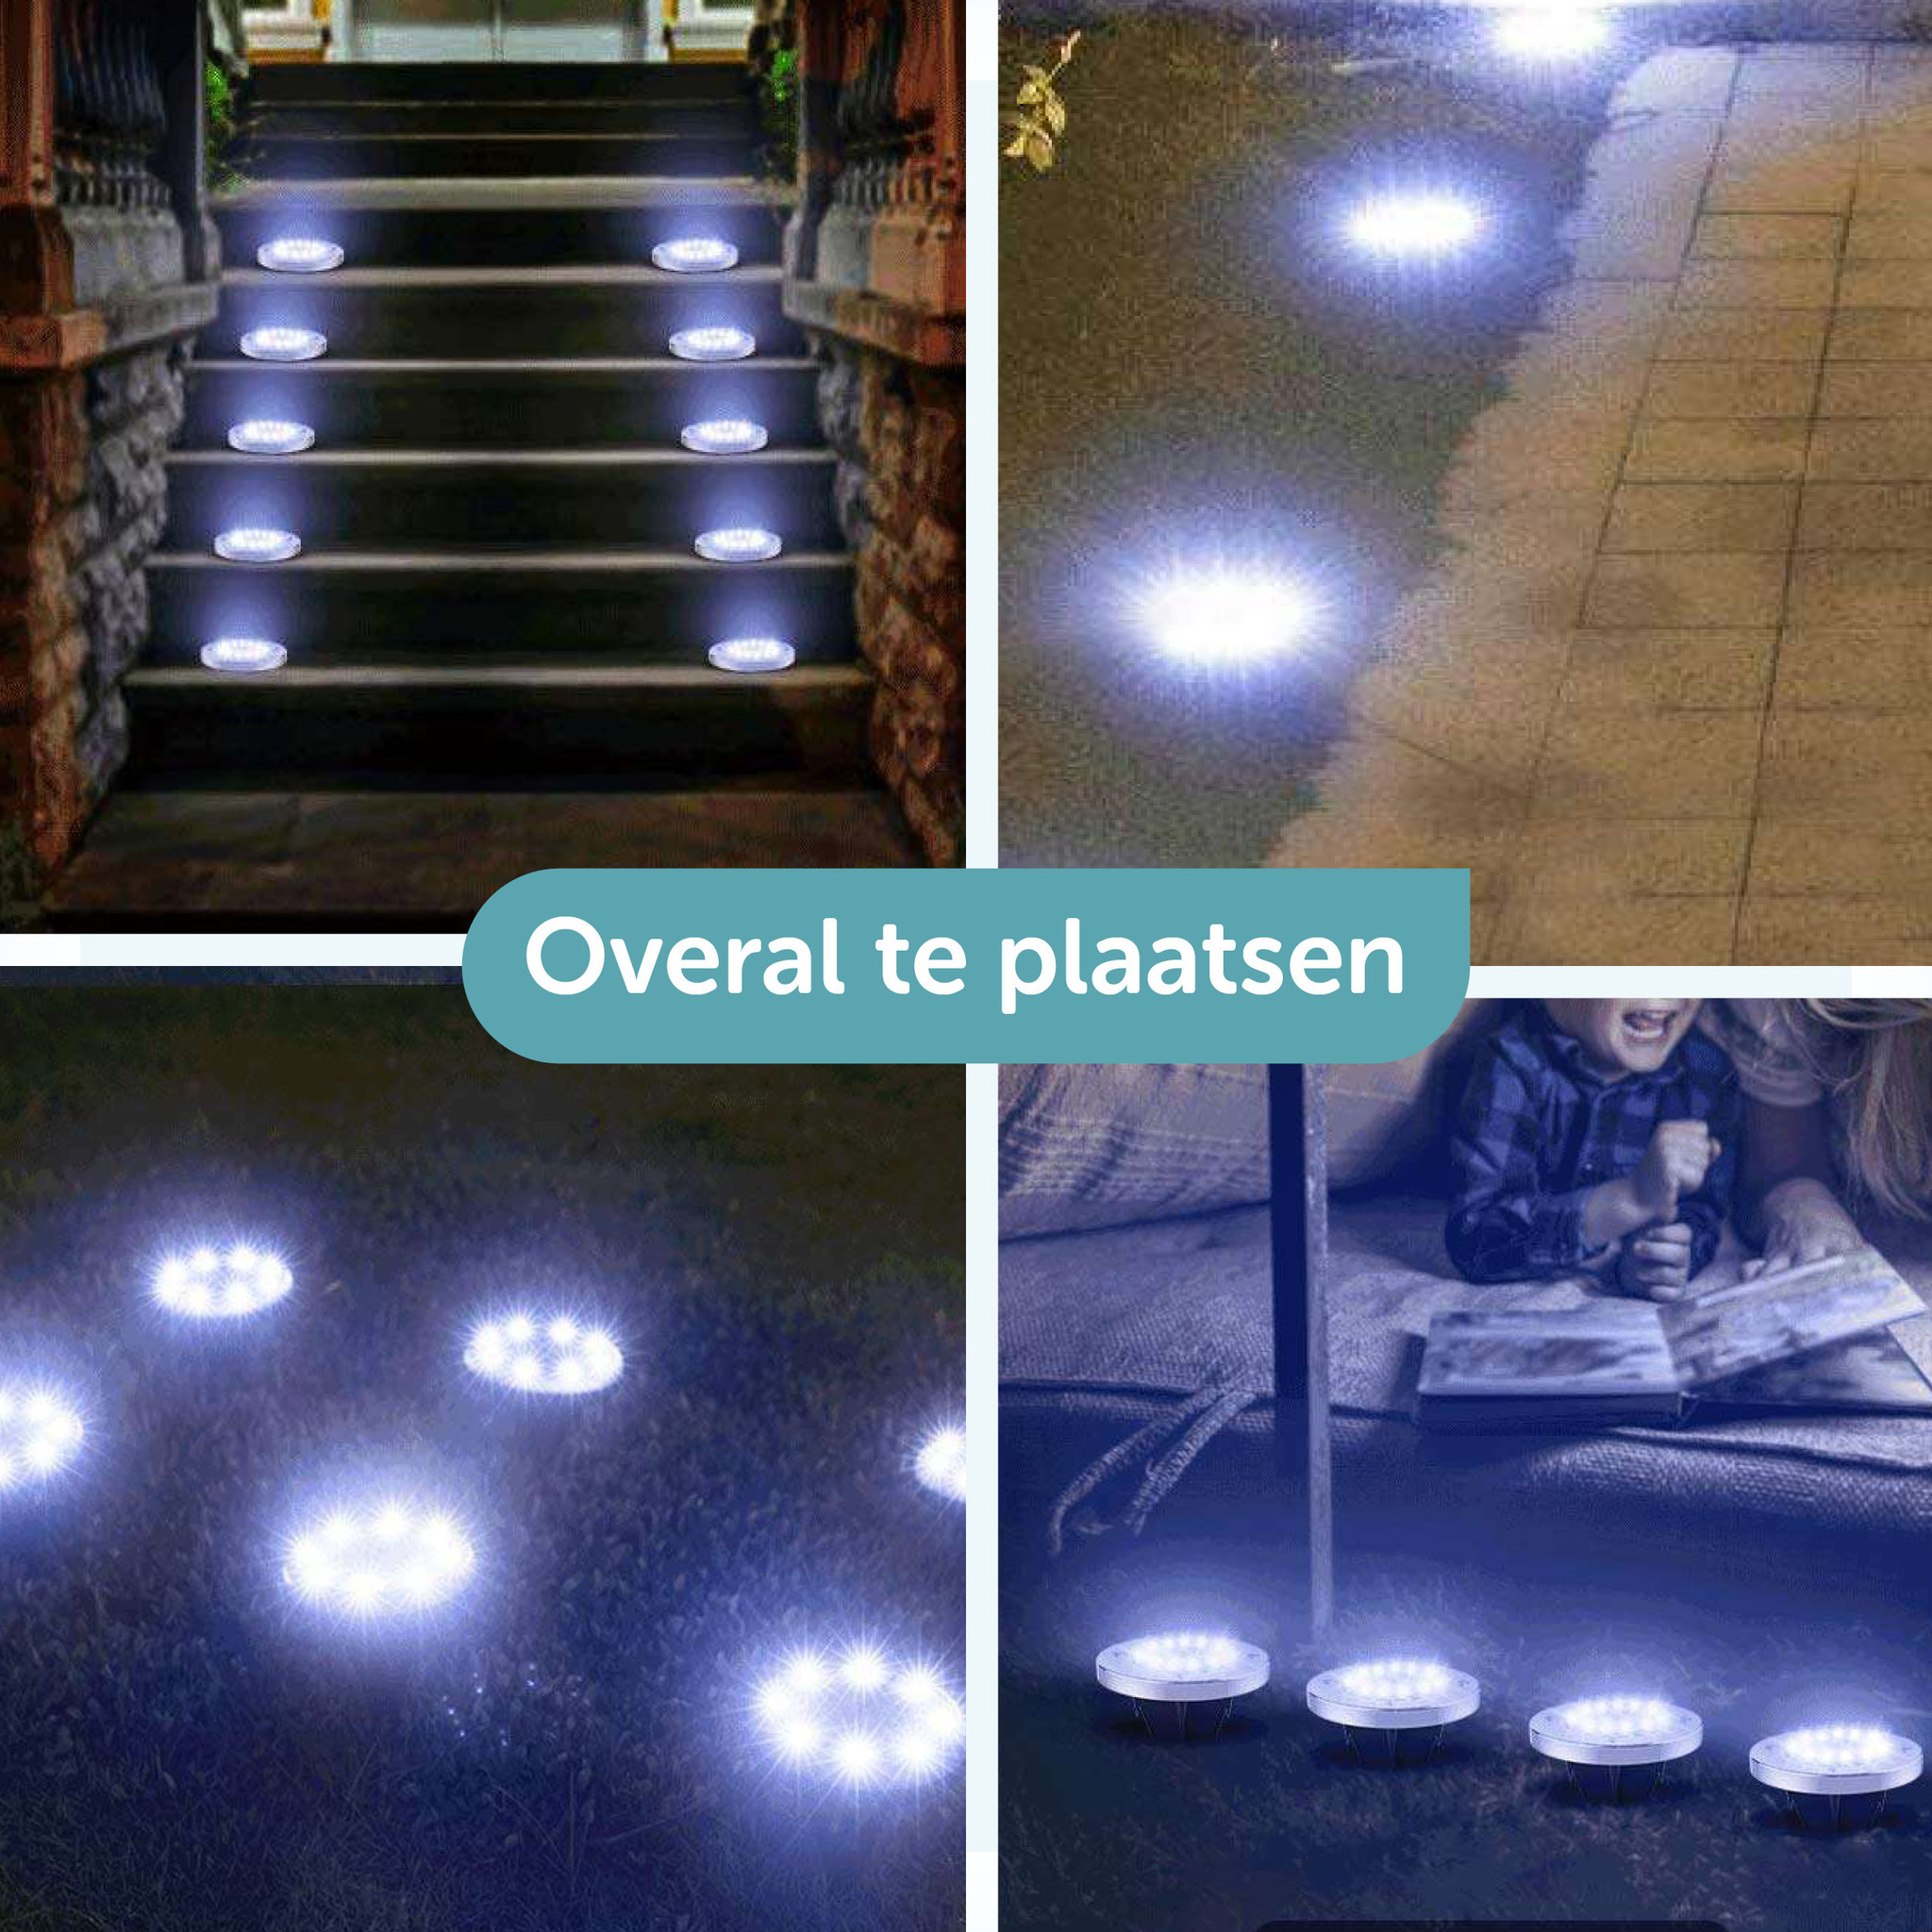 ForDig Solar Grondspots (8 stuks) - Grond Spots op Zonne-energie met 16 LED - 10 Uur Buiten Verlichting in Tuin - Waterdicht - Tuinverlichting Lamp - Buitenverlichting Tuinlamp - Dagdeal.nl